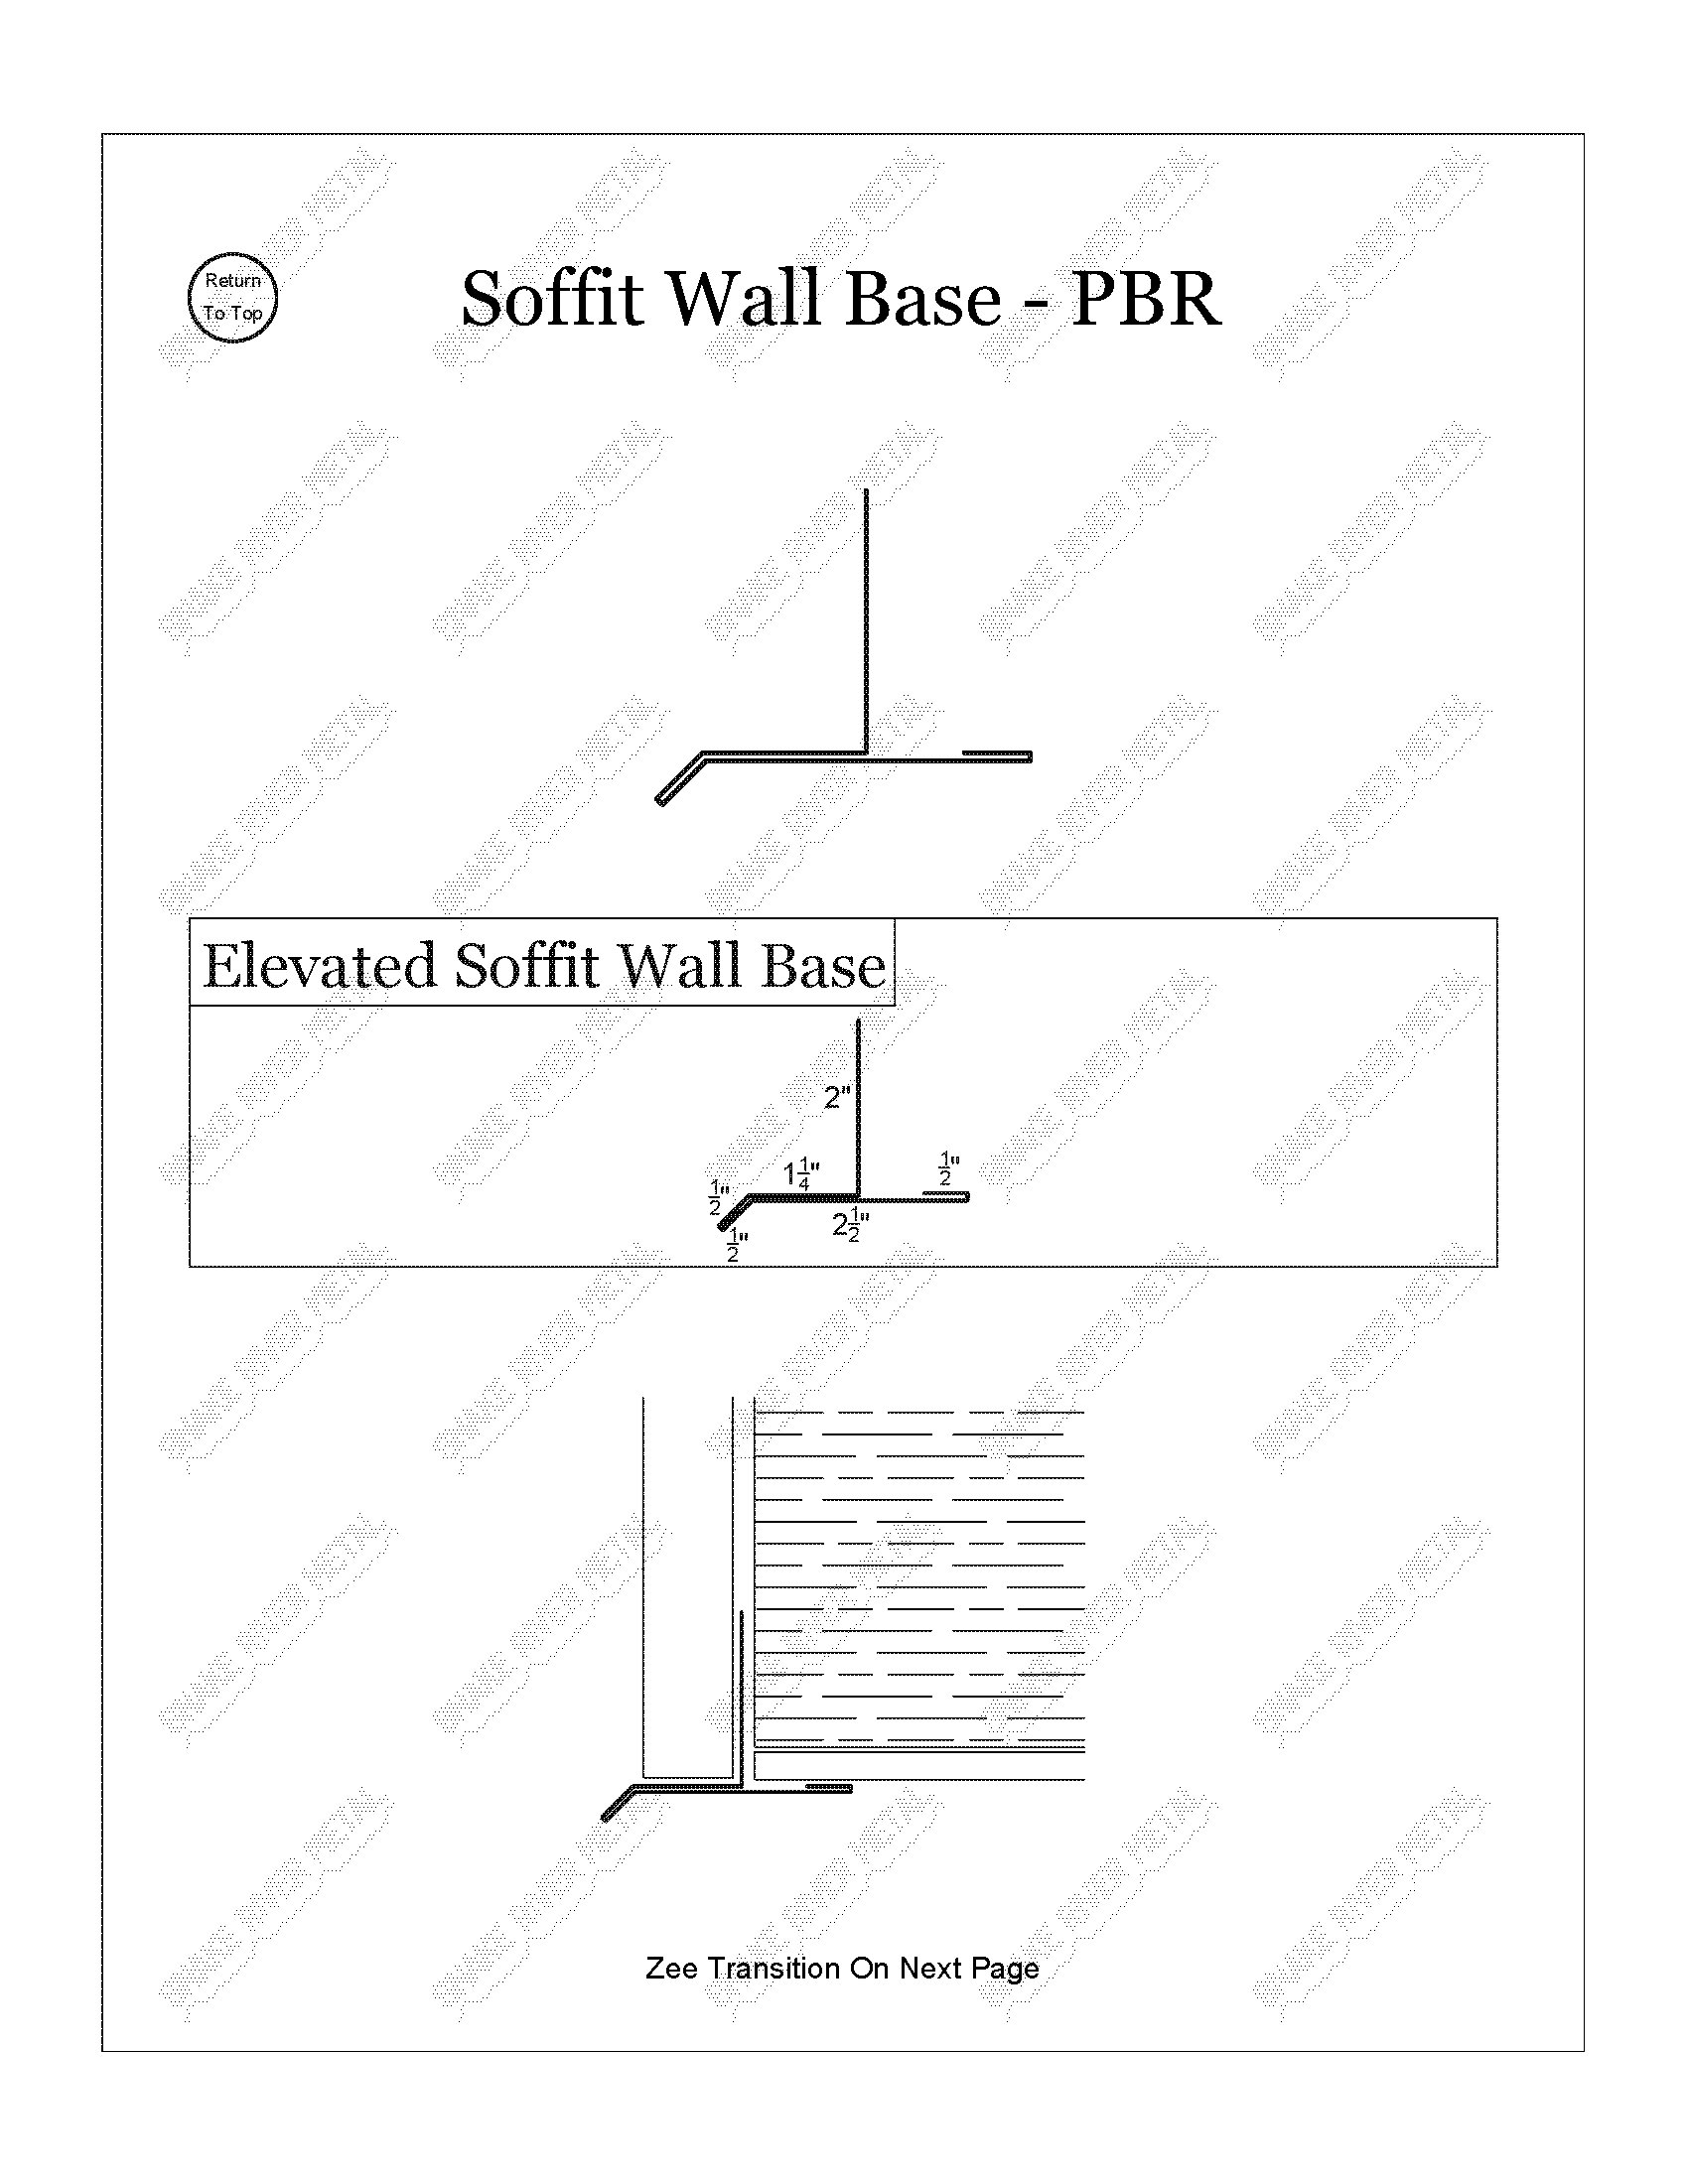 Soffit Wall Base - PBR Trim